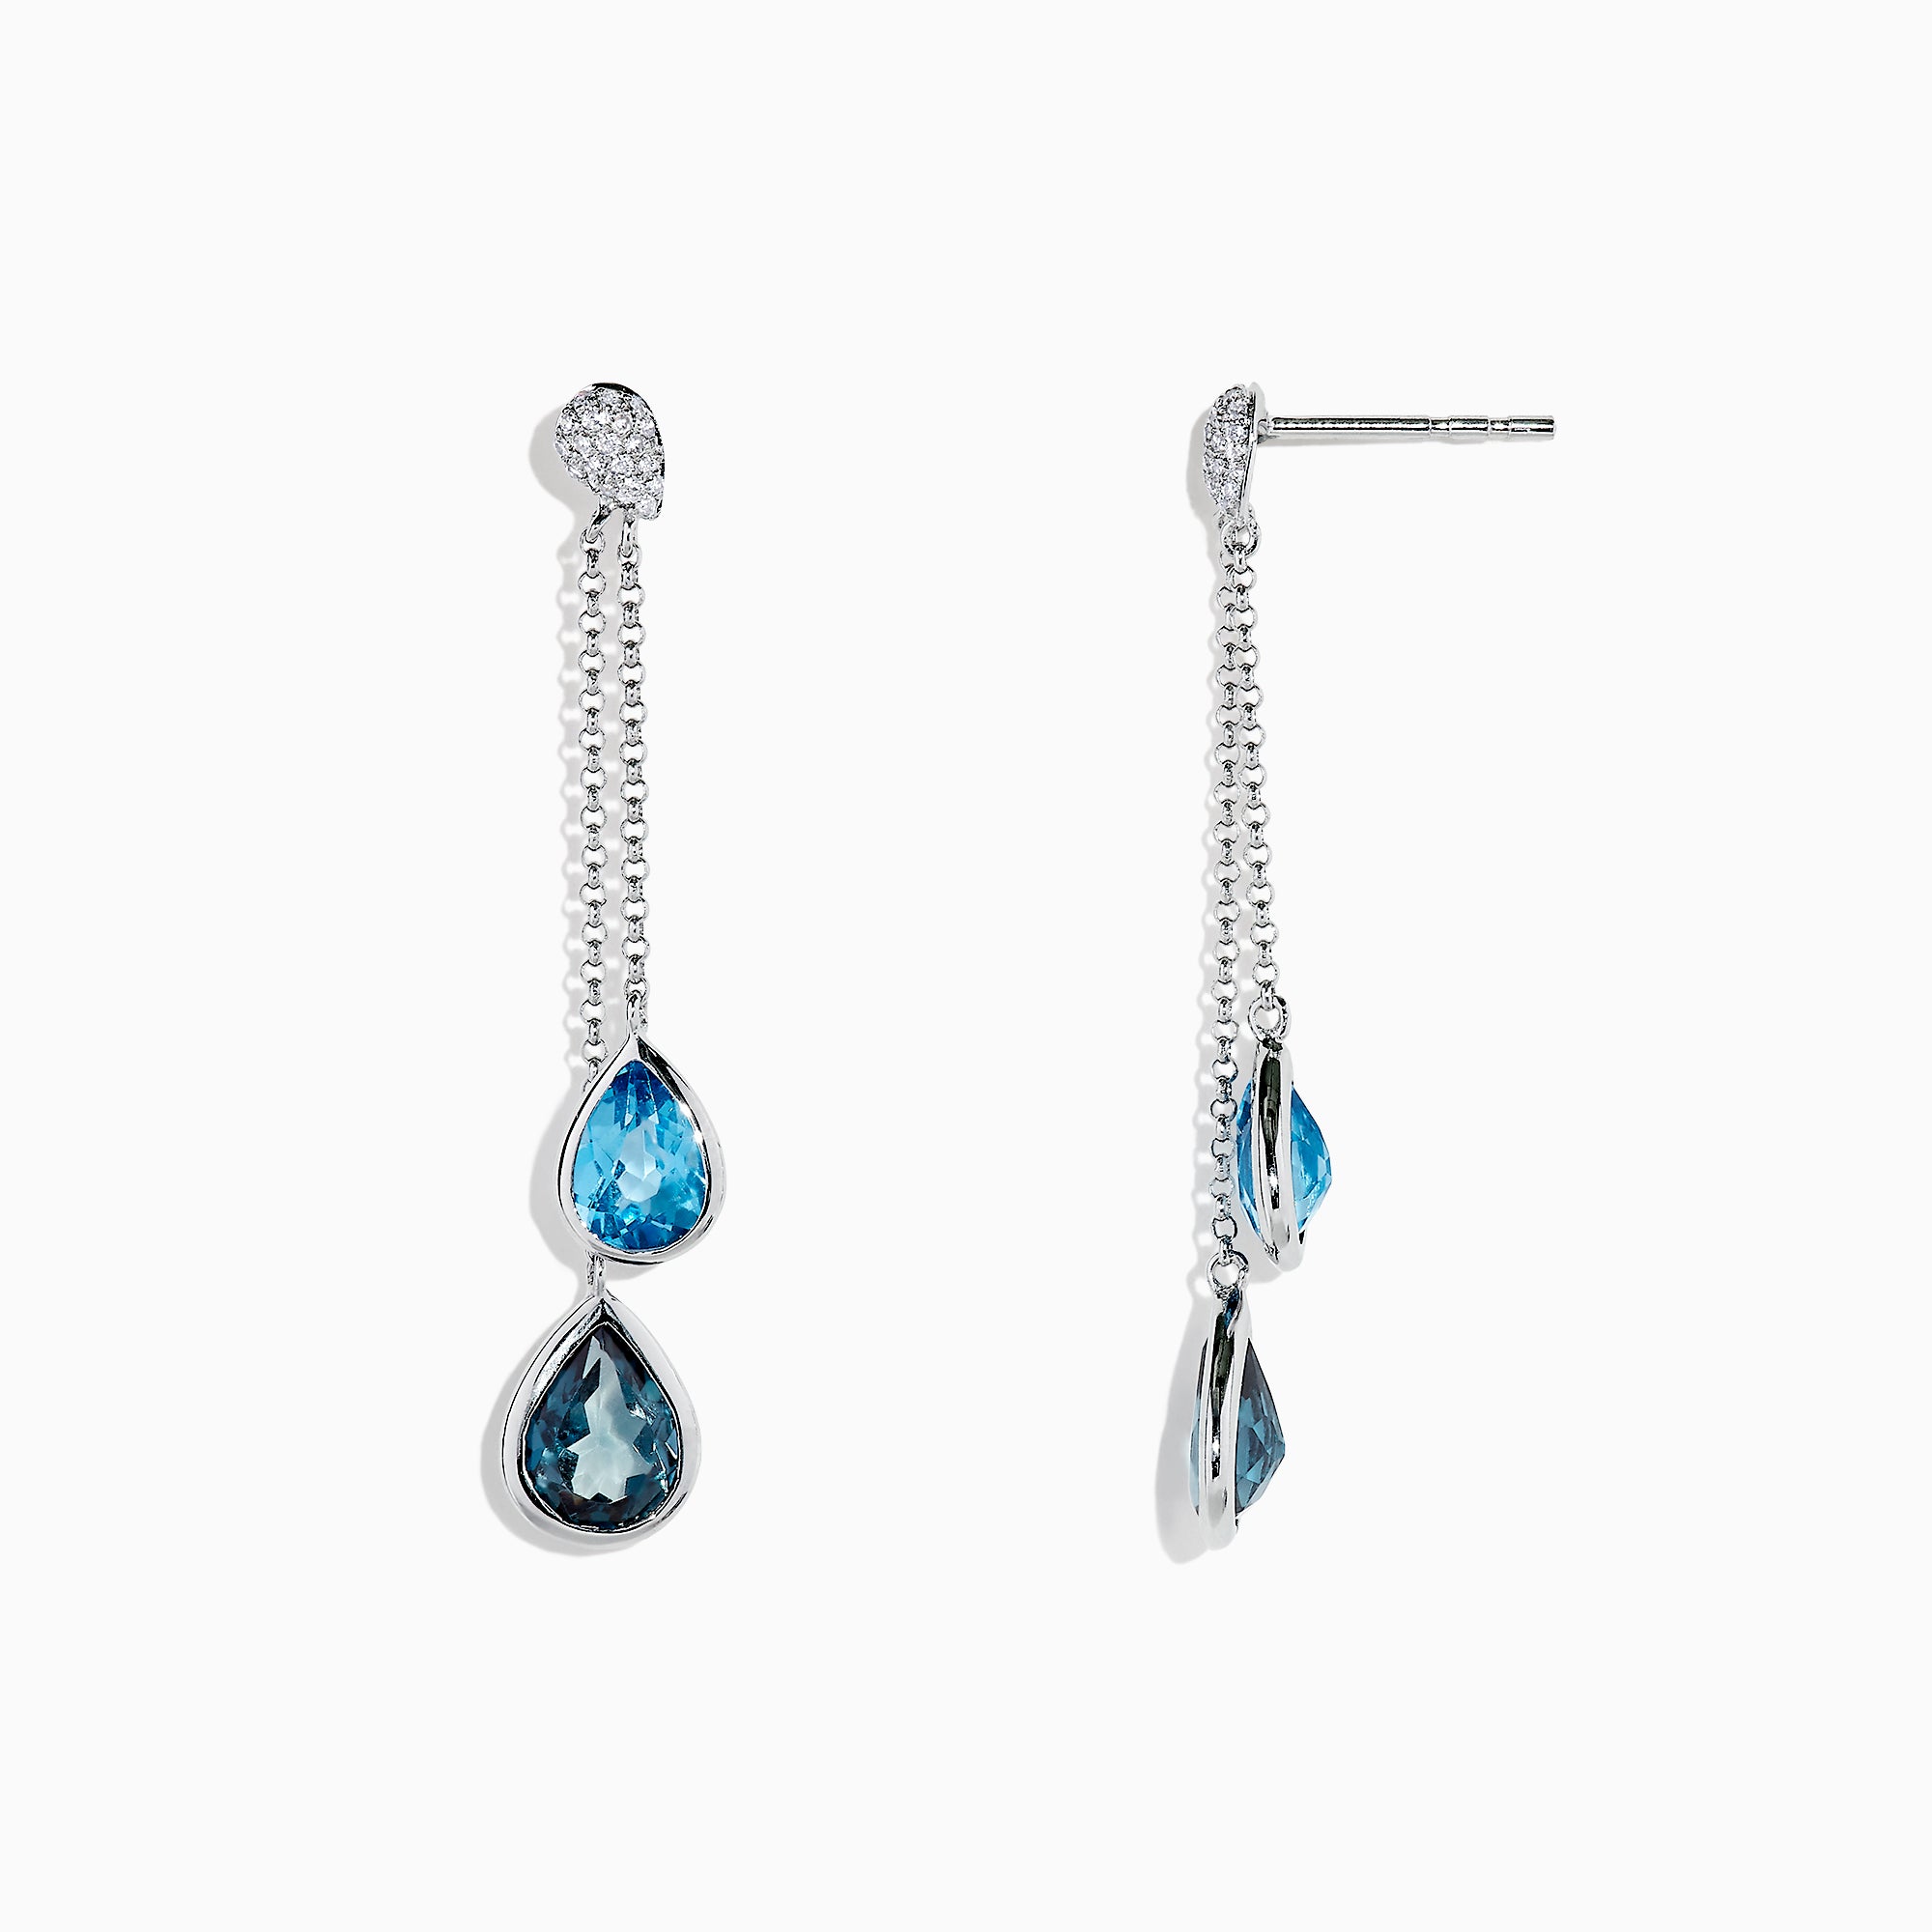 Effy Ocean Bleu 14K White Gold Blue Topaz and Diamond Earrings, 4.28 TCW